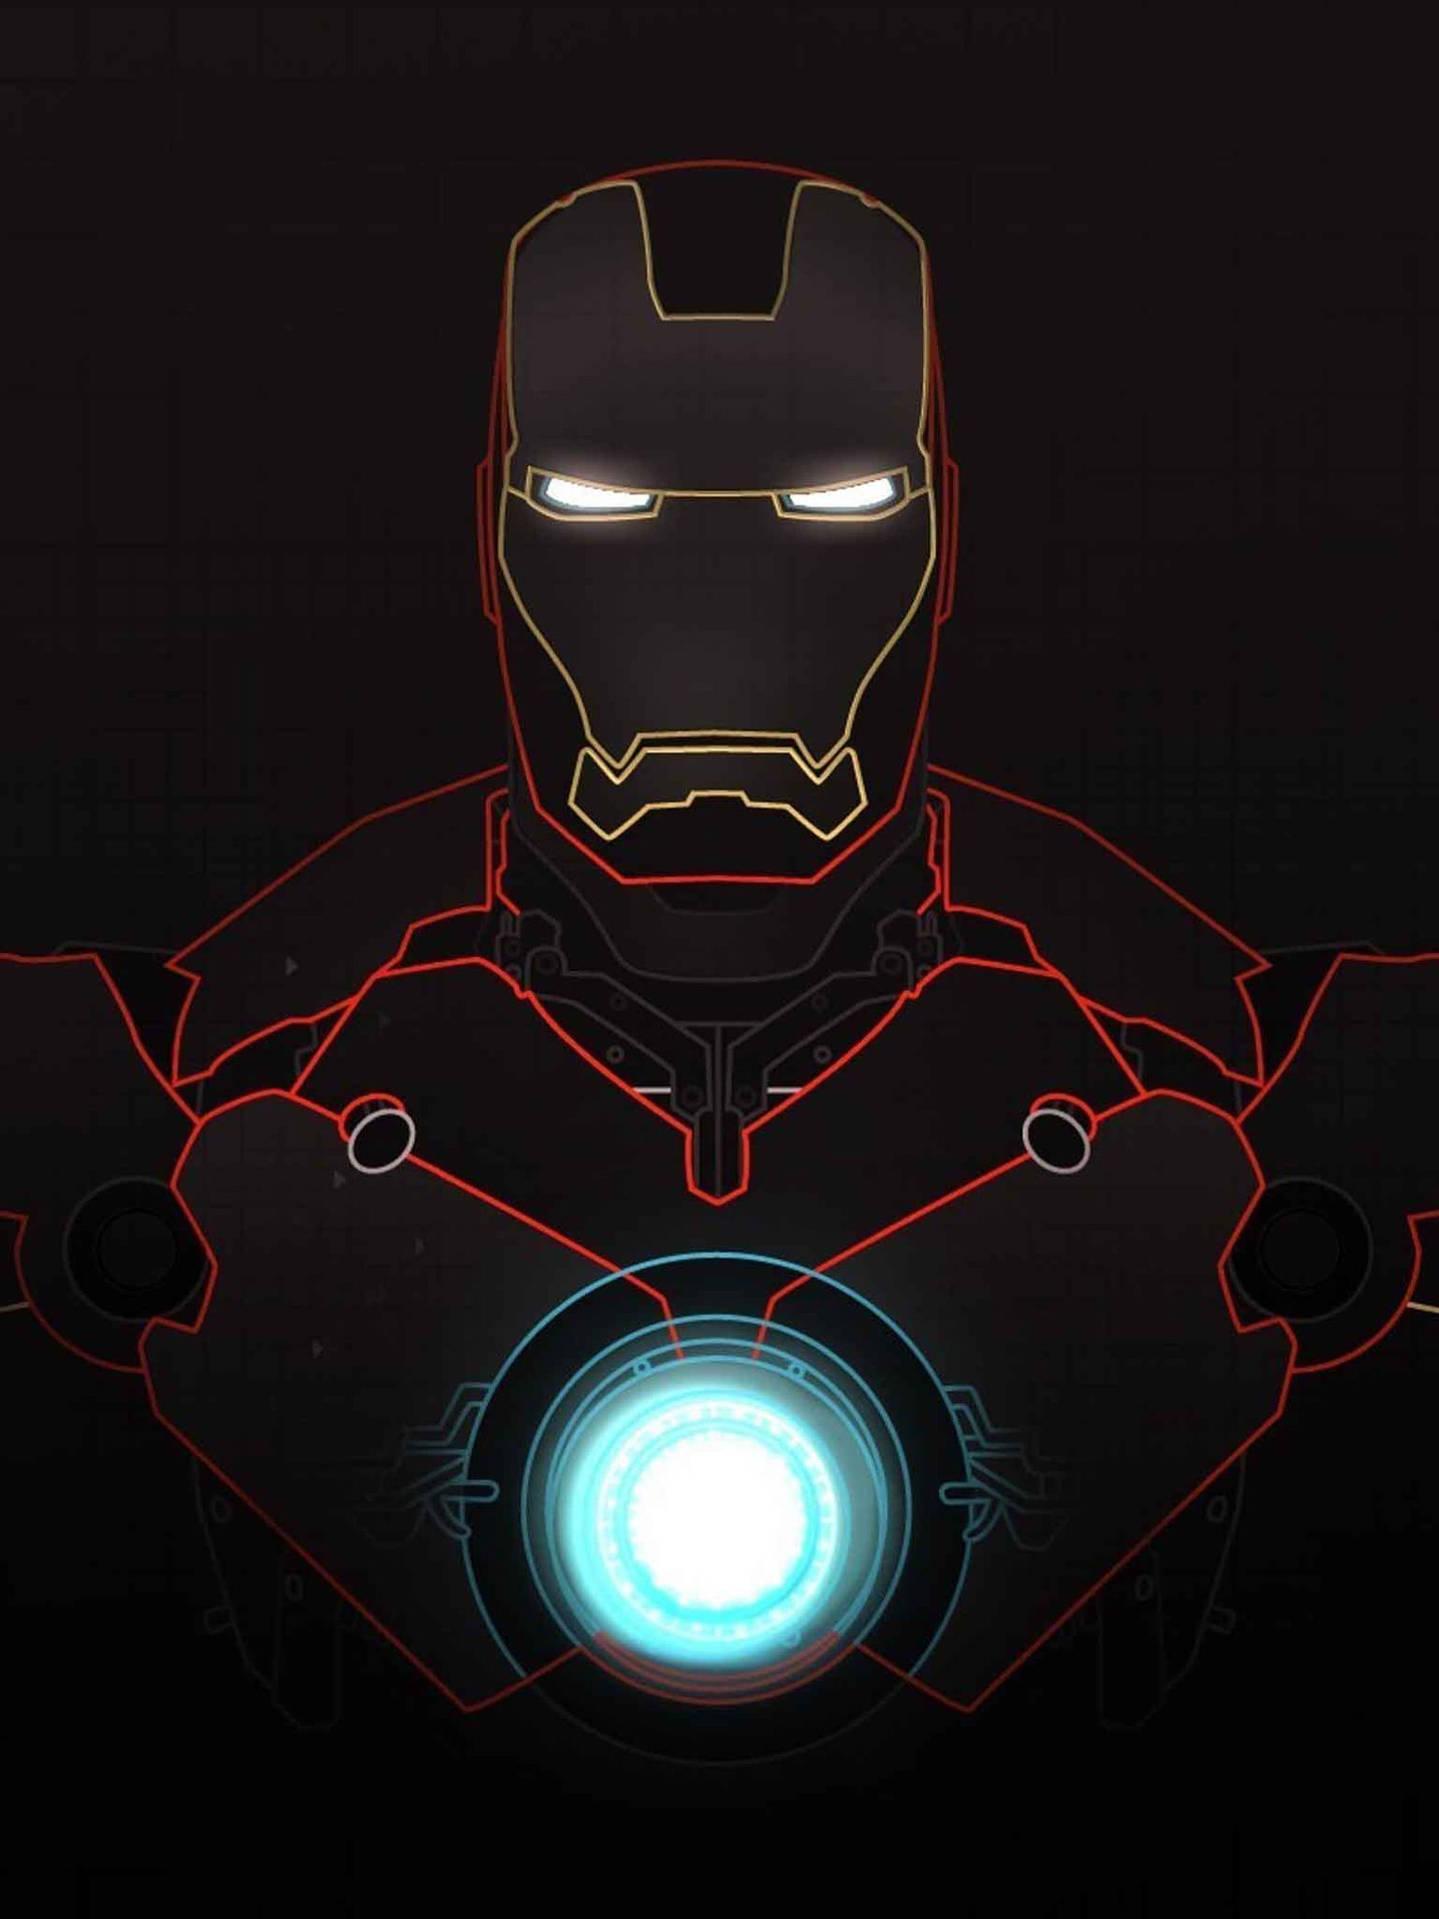 Free Iron Man Phone Wallpaper Downloads [100] Iron Man Phone